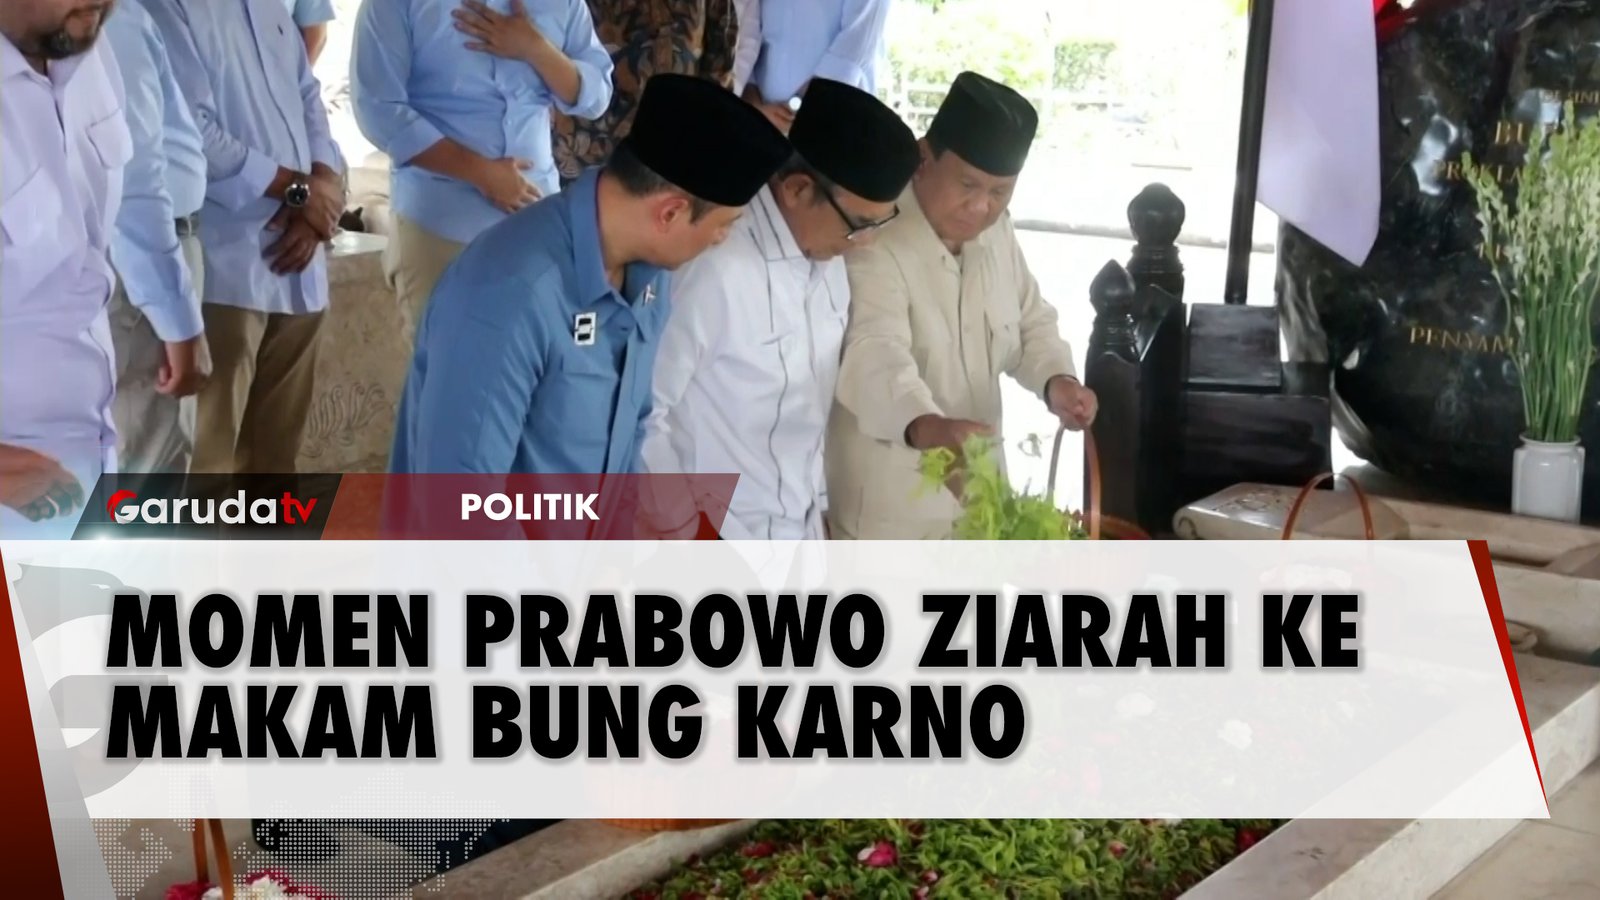 Ziarah ke Makam Bung Karno, Prabowo- Bung Karno Mempersatukan Nusantara